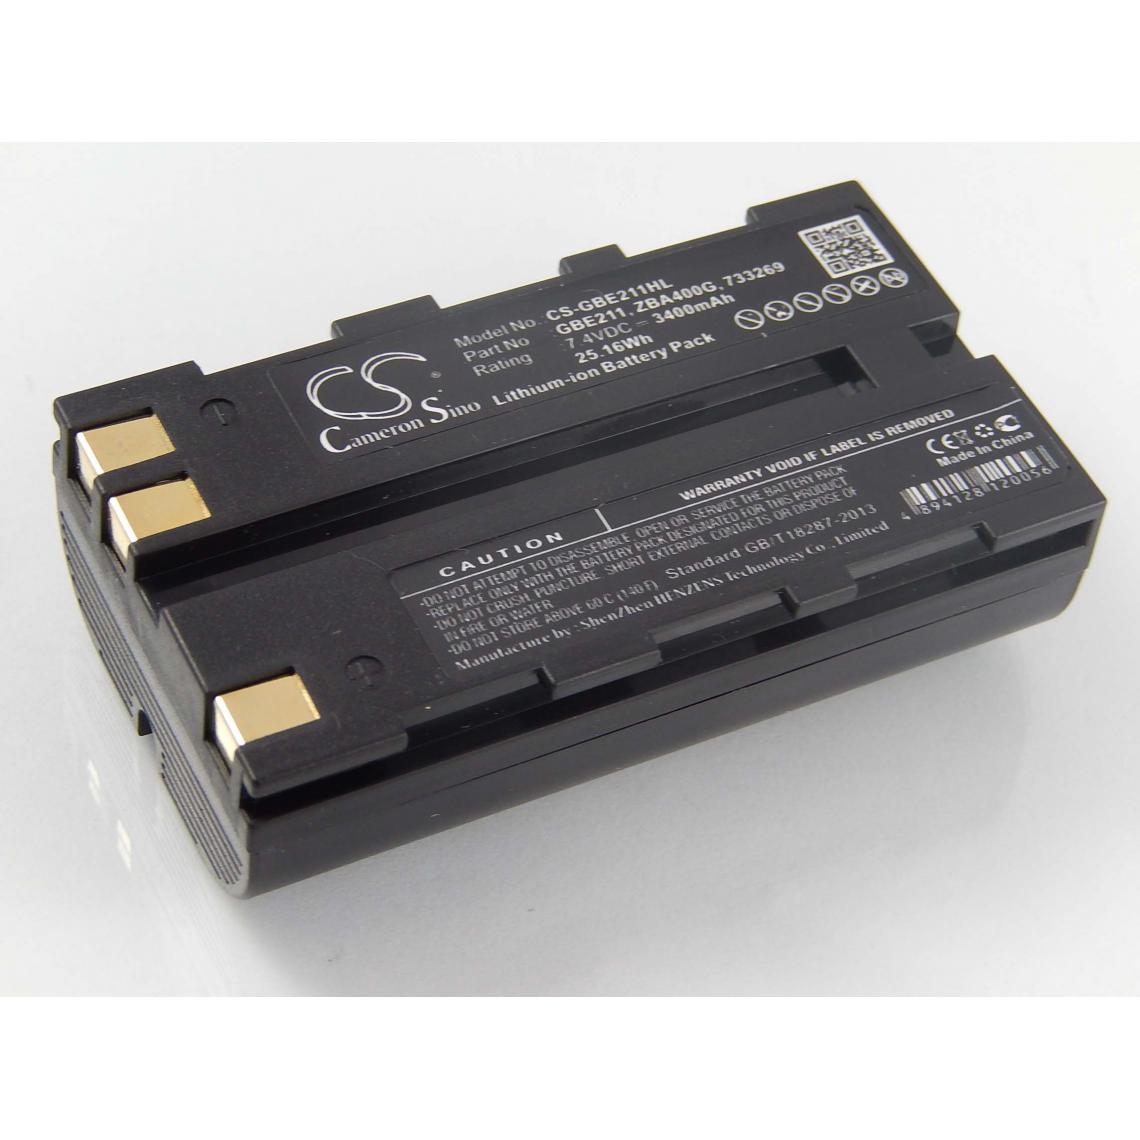 Vhbw - vhbw Batterie compatible avec Leica Builder 100, 200, 300, 400 dispositif de mesure laser, outil de mesure (3400mAh, 7,4V, Li-ion) - Piles rechargeables